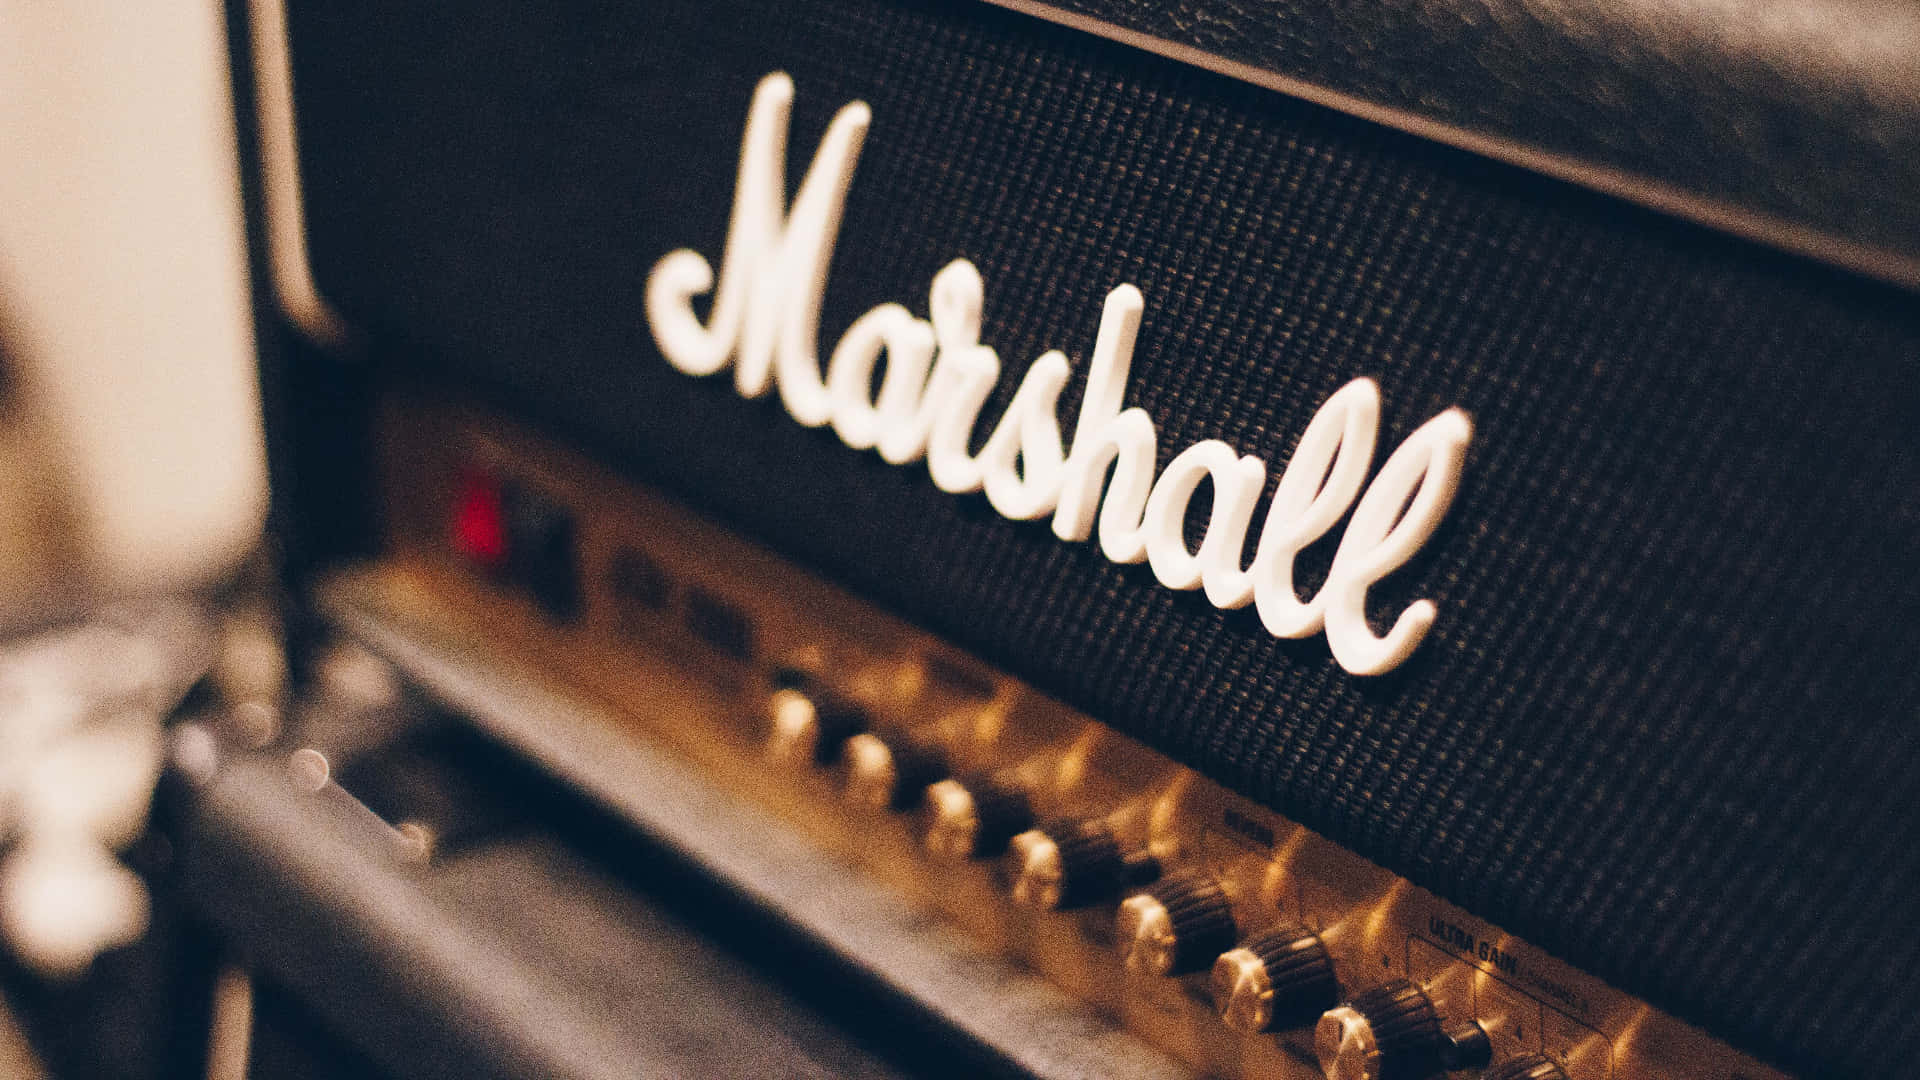 Marshallverstärker - Die Besten Verstärker Für Gitarre